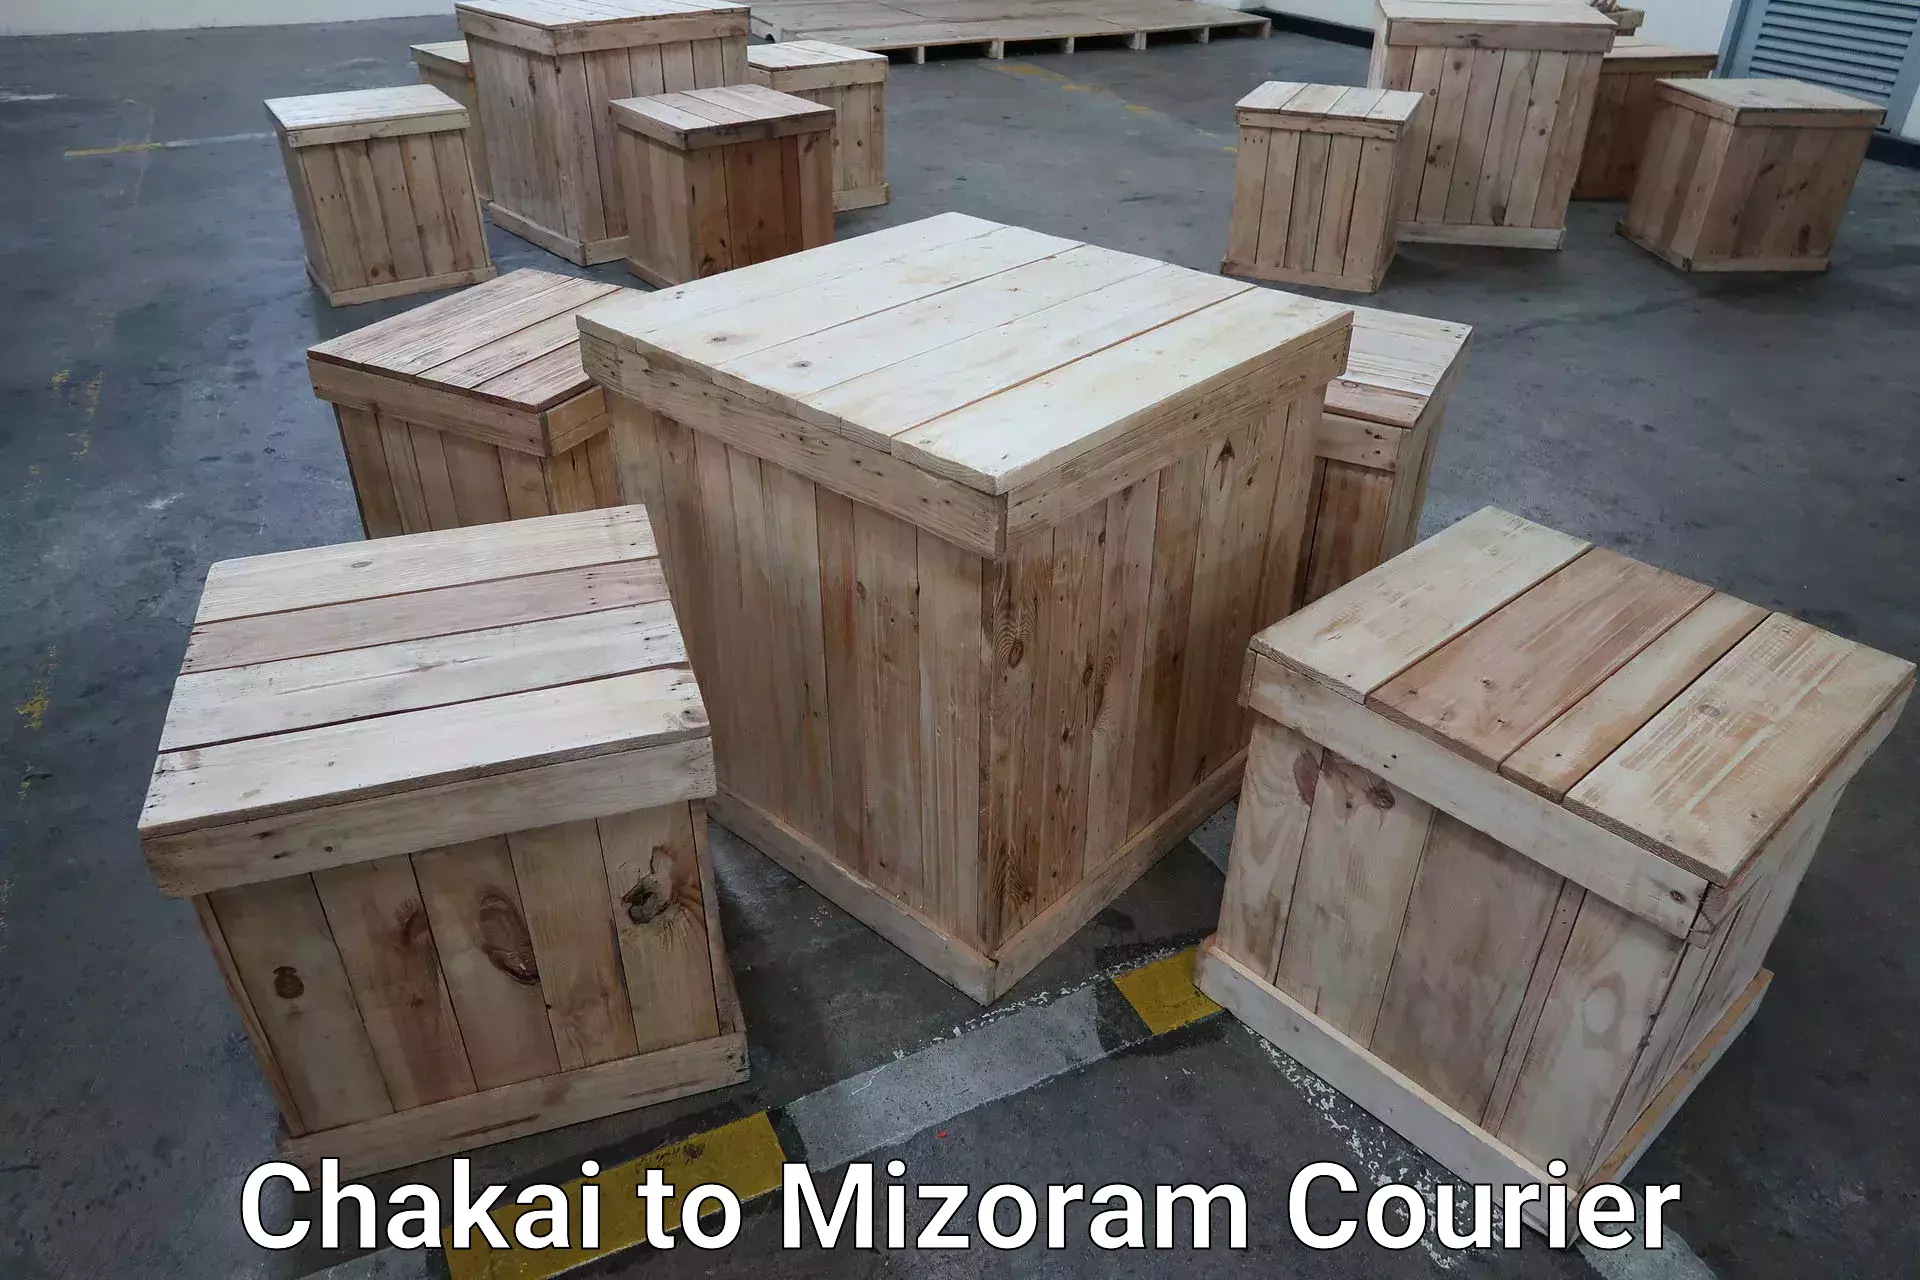 Luggage forwarding service Chakai to Mizoram